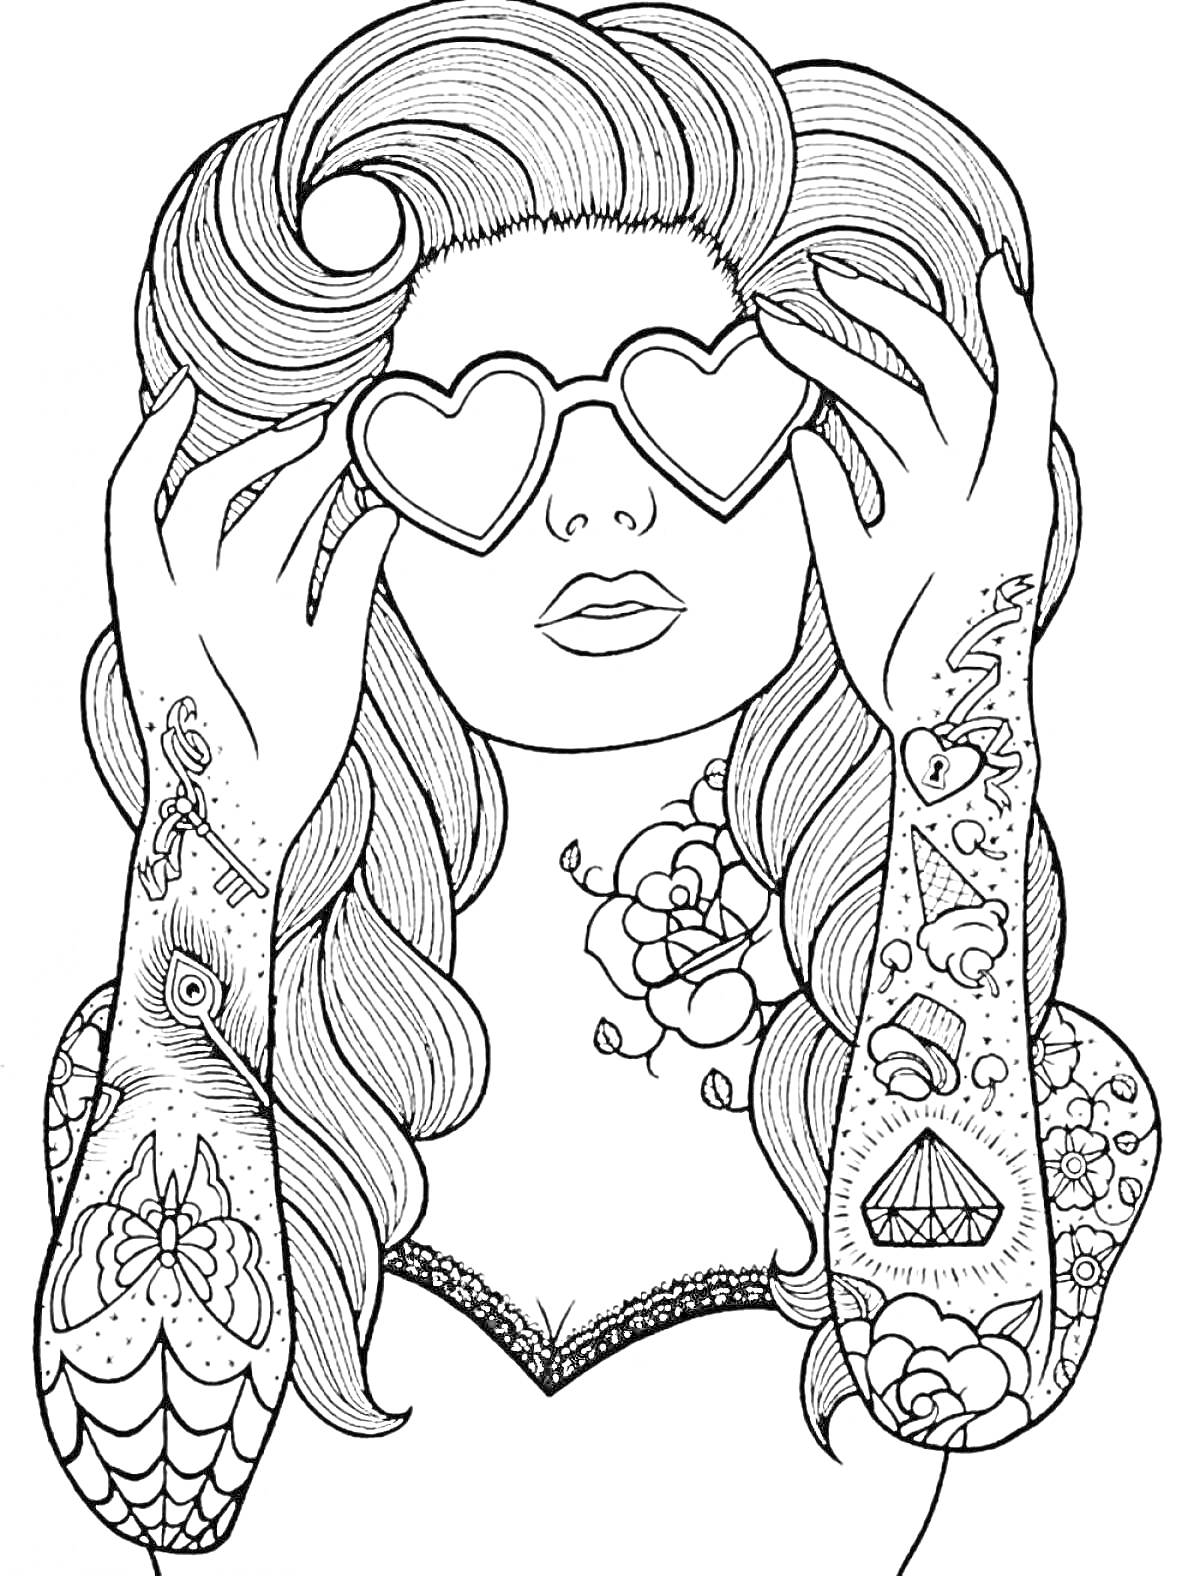 Раскраска Женщина с длинными волнистыми волосами и сердечными очками, татуировки на руках и плечах